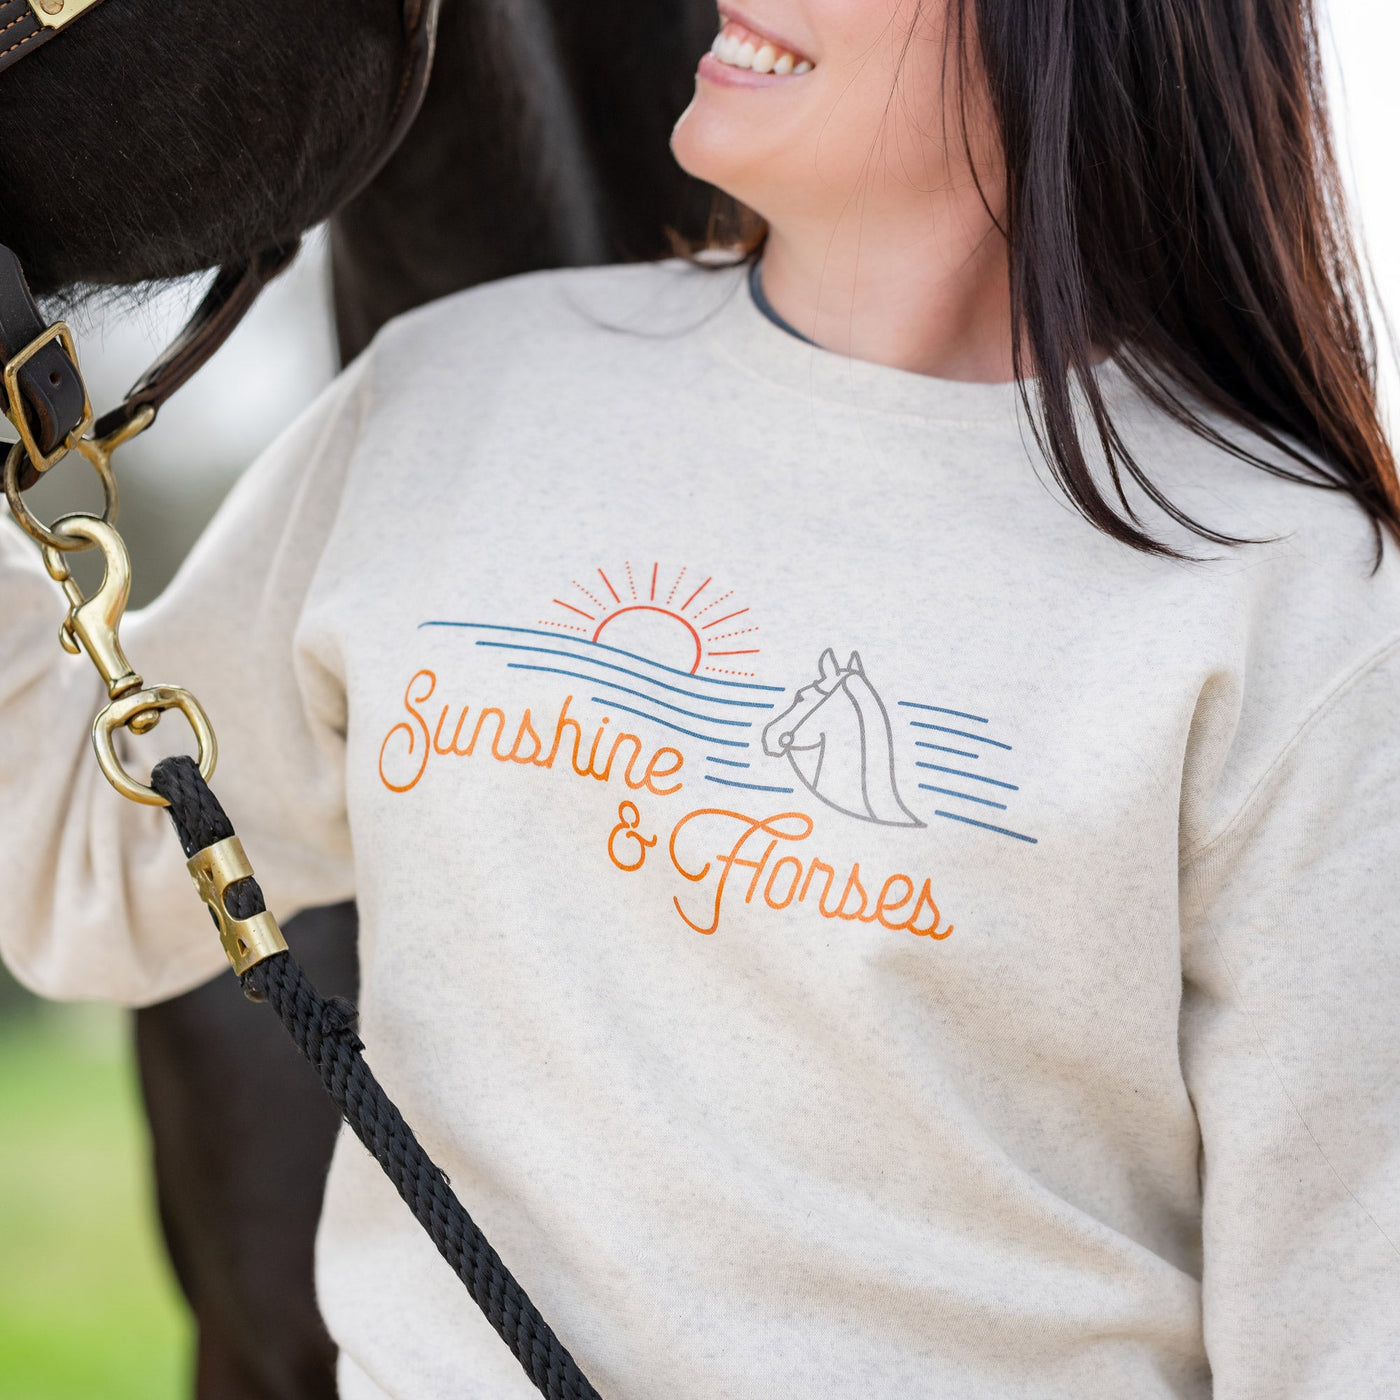 Sunshine & Horses Sweatshirt by Dapplebay